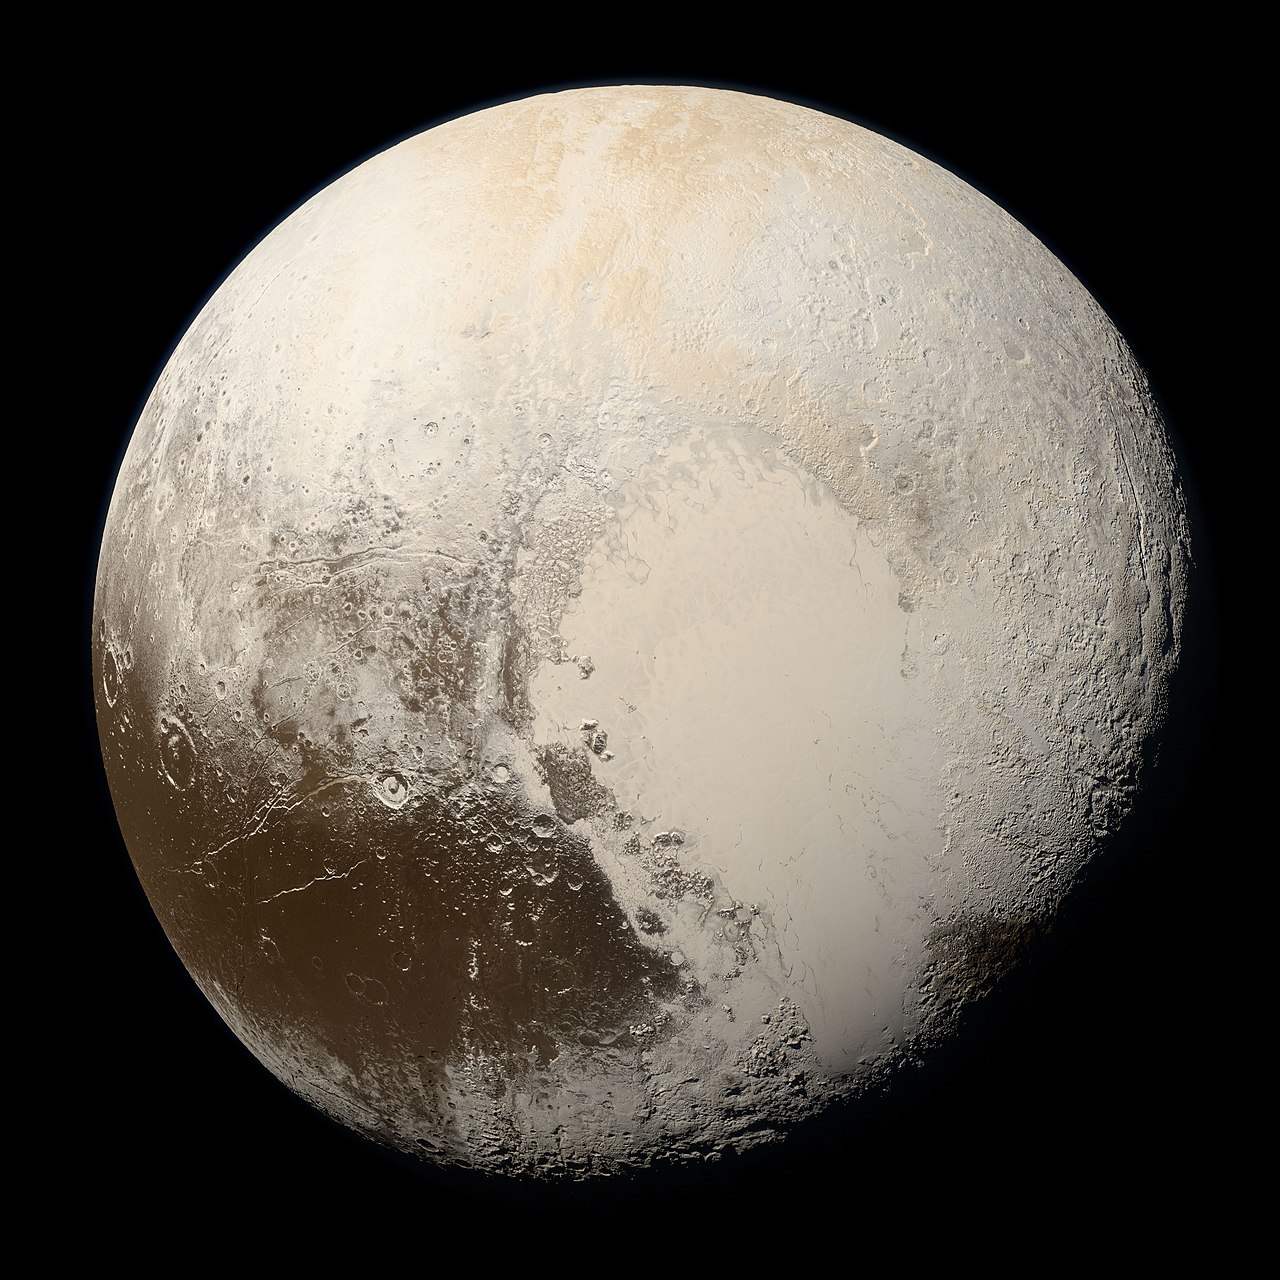 Naprendszerünk Kuiper-övének legismertebb objektuma, a Pluto a NASA New Horizons szondájának felvételén